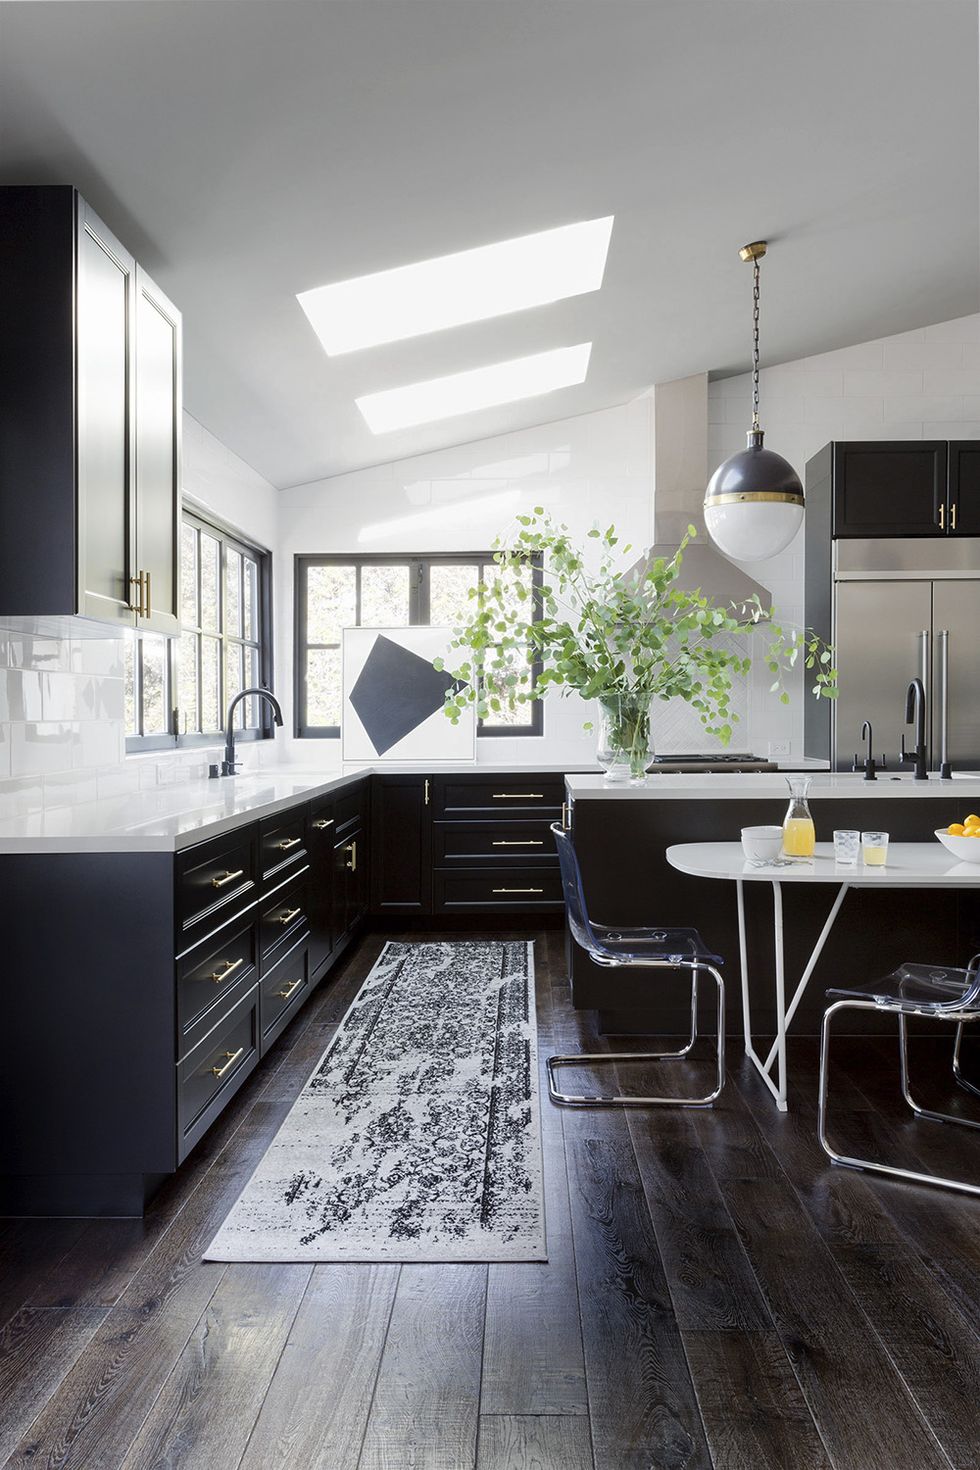 Hình ảnh phòng bếp ấn tượng với hệ tủ màu đen tuyền, bàn ăn thông minh có thể gập gọn khi không sử dụng